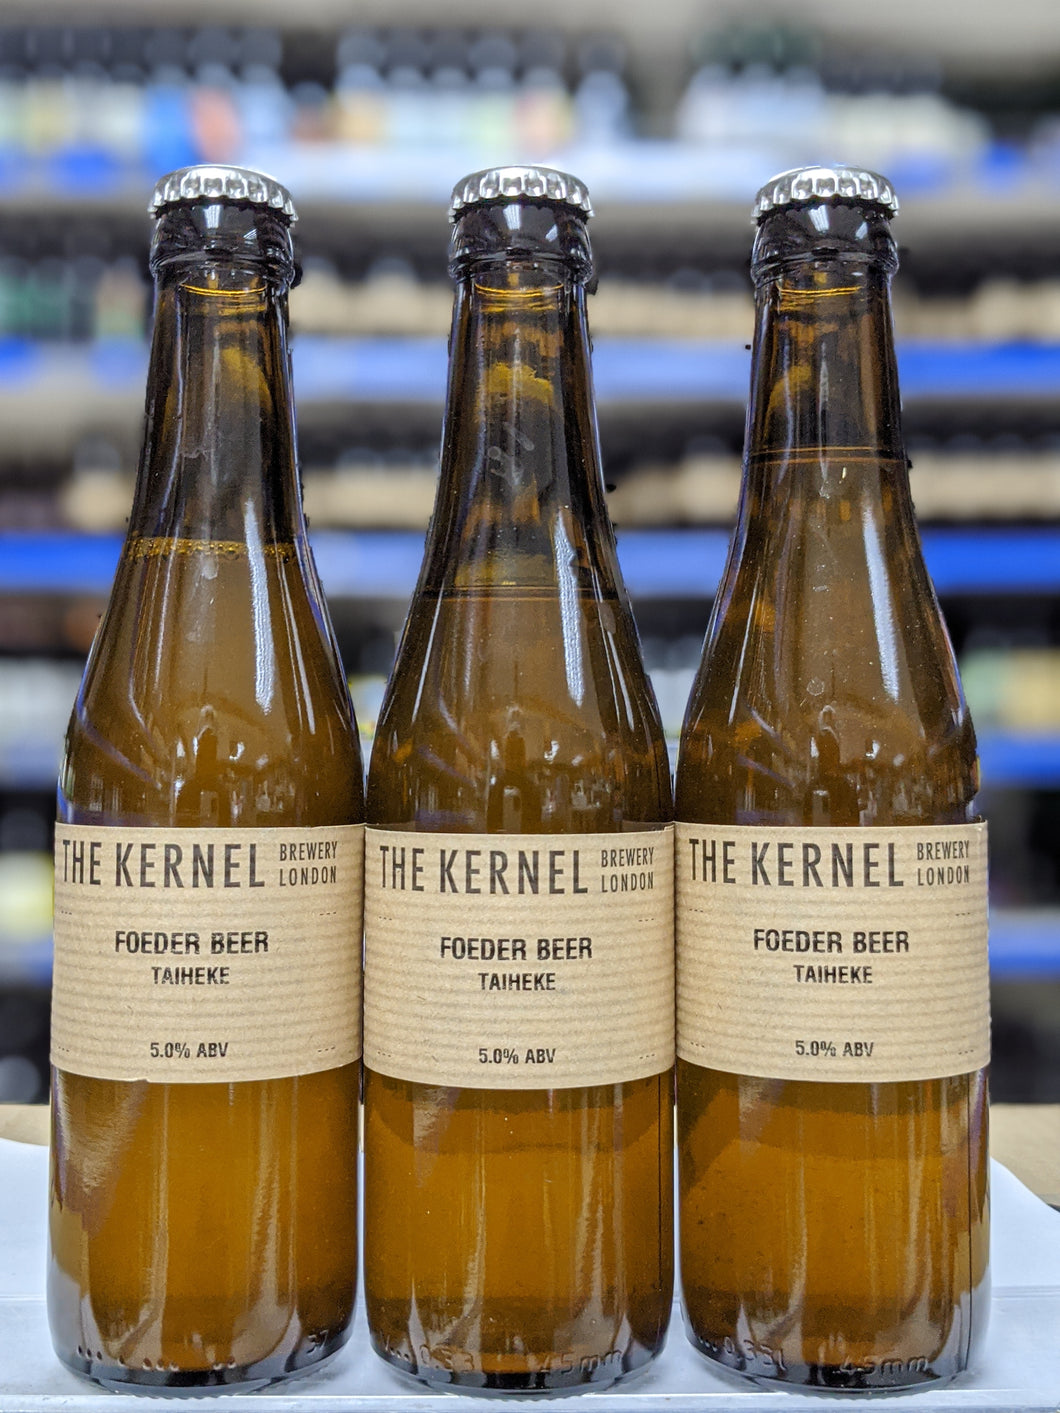 Foeder Beer Taiheke - The Kernel Brewery - Foeder Beer, 5%, 330ml Bottle